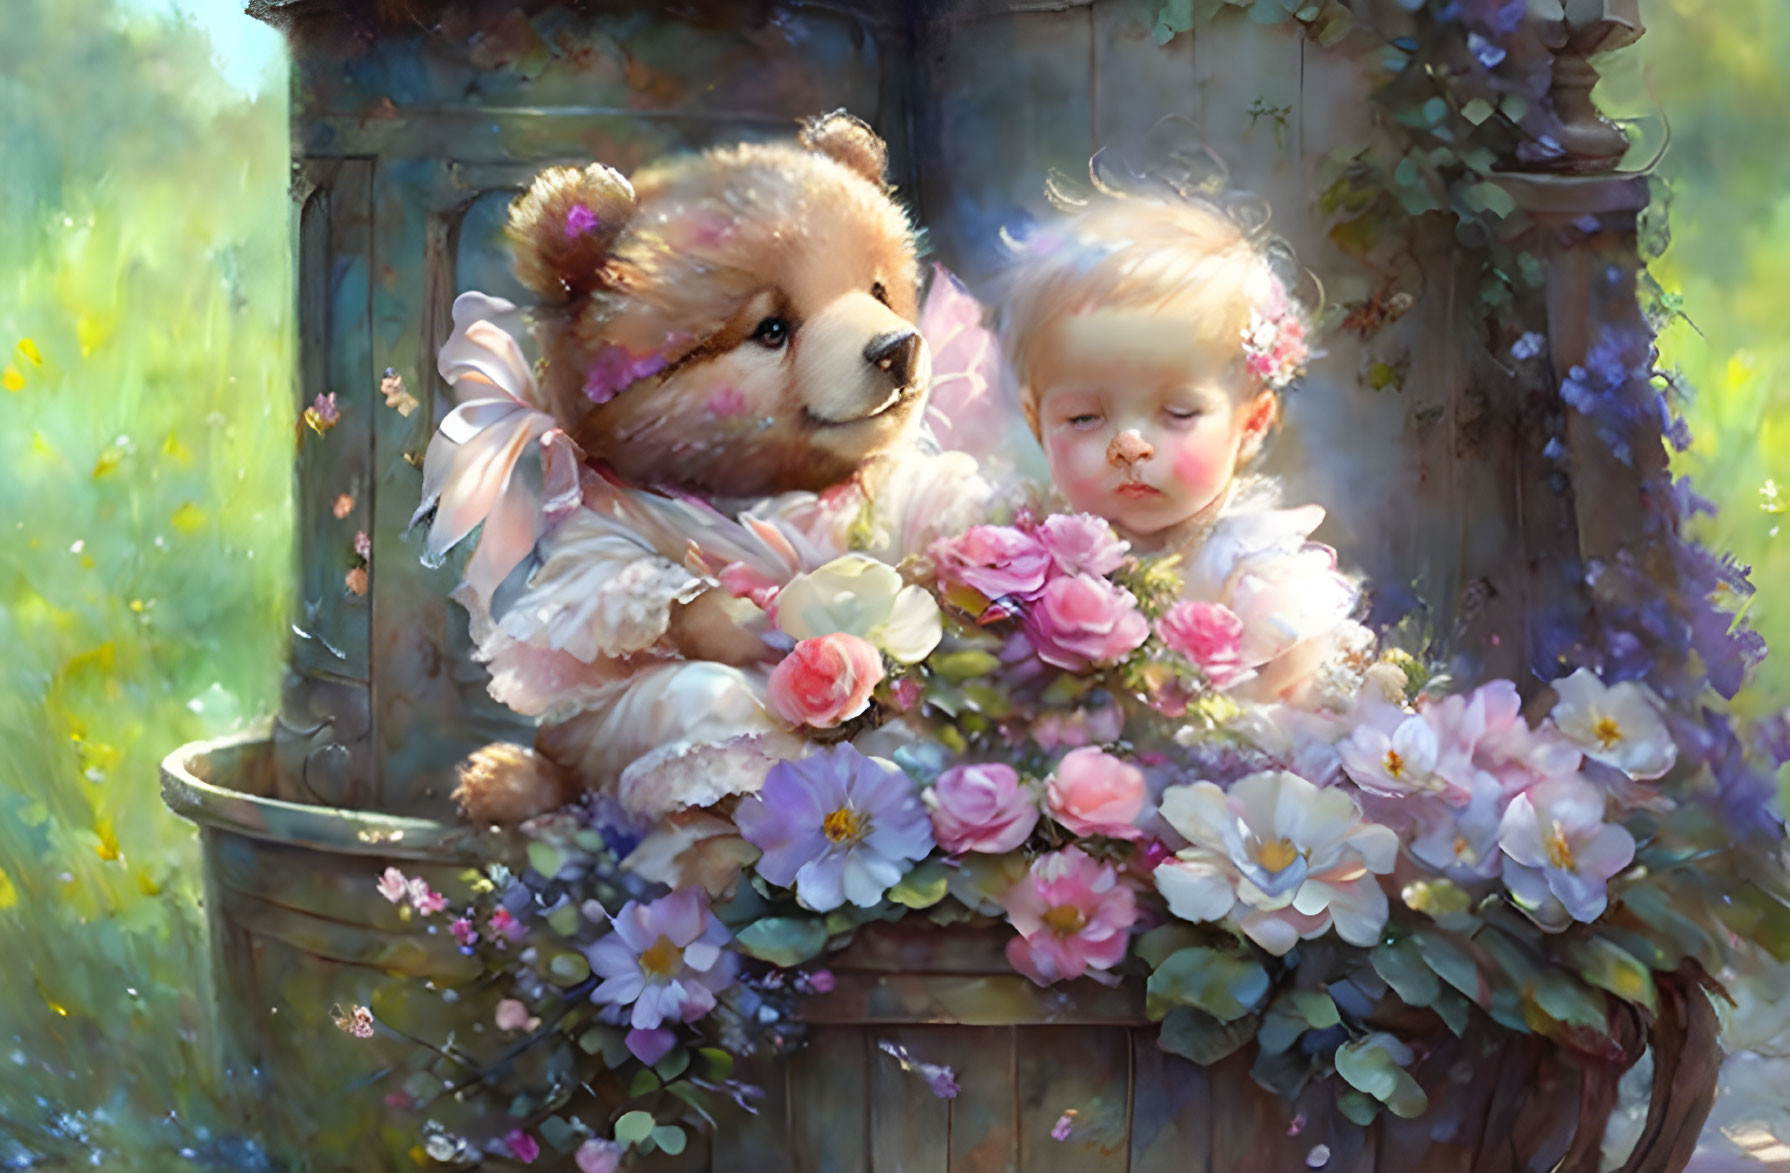 Baby and Teddy Bear